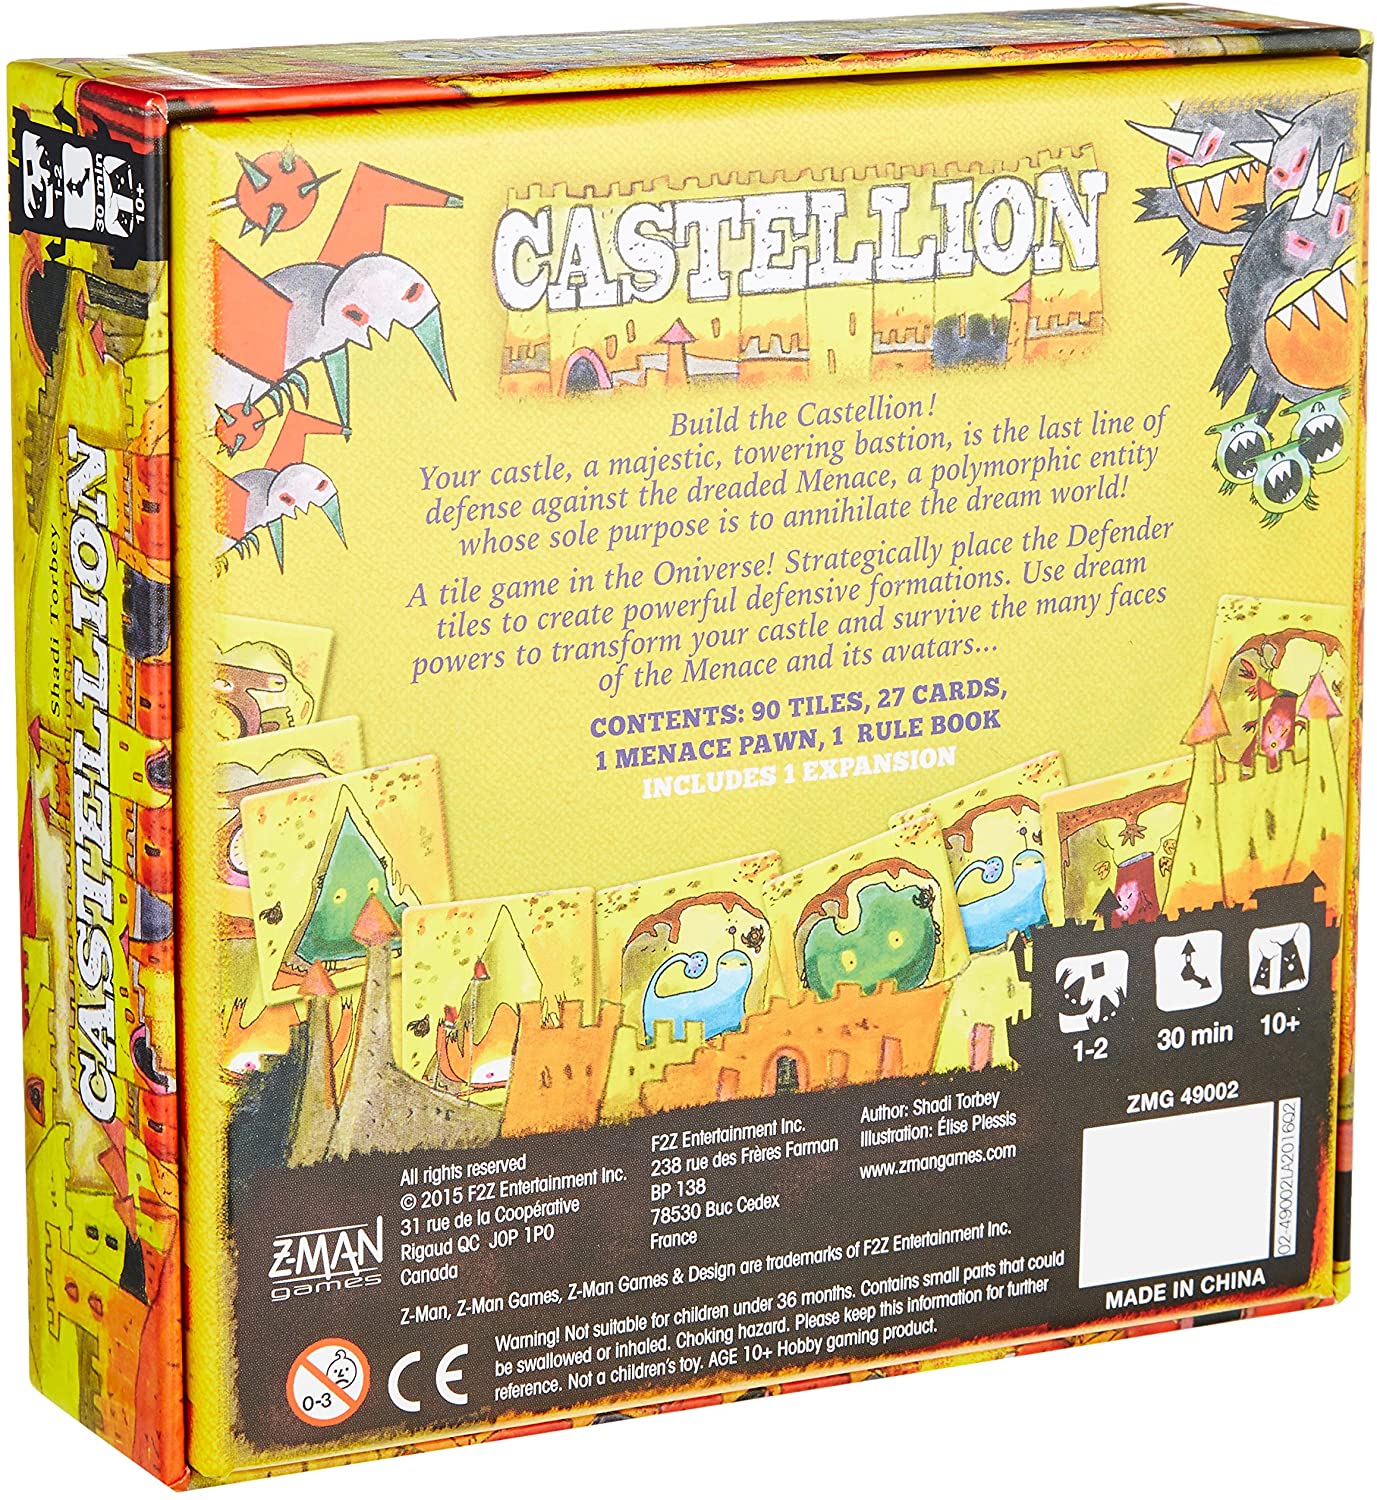 Castellion Z-Man Games